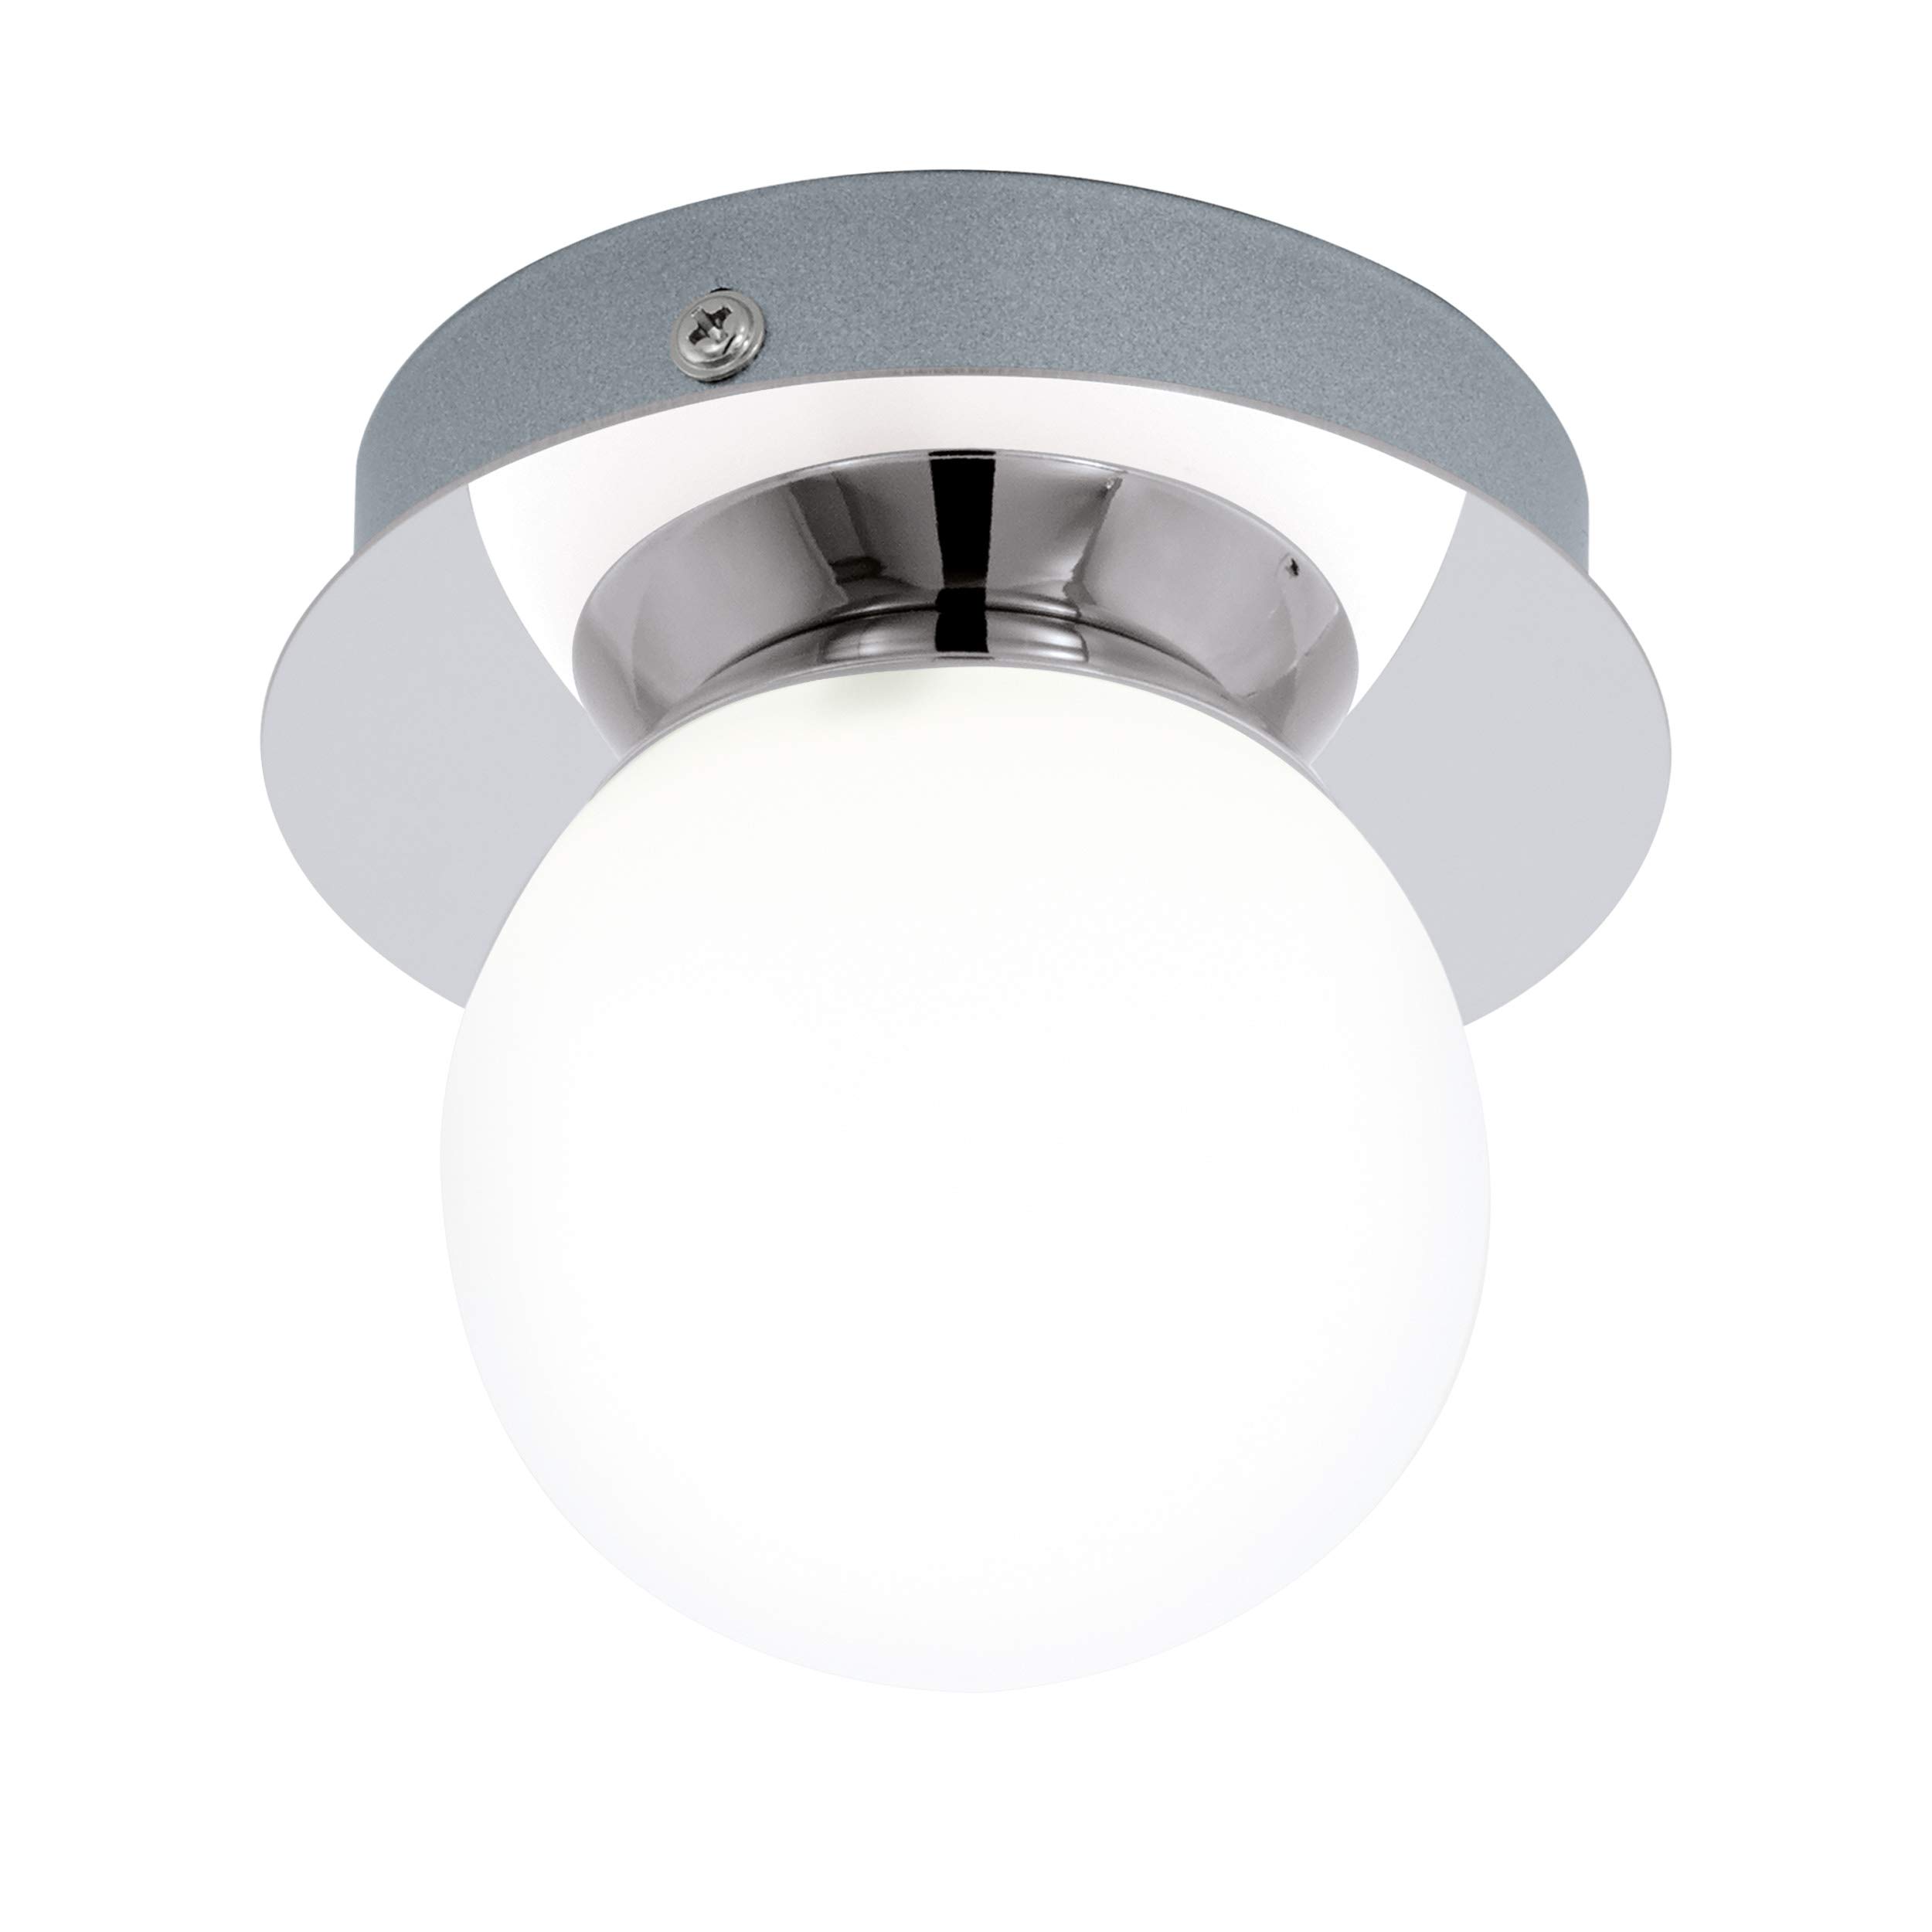 EGLO LED Deckenleuchte Mosiano, Wandlampe Bad, Badezimmer Lampe aus Edelstahl in Chrom und opal-mattem Glas in Weiß, LED Feuchtraumleuchte warmweiß, IP44, D 11 cm